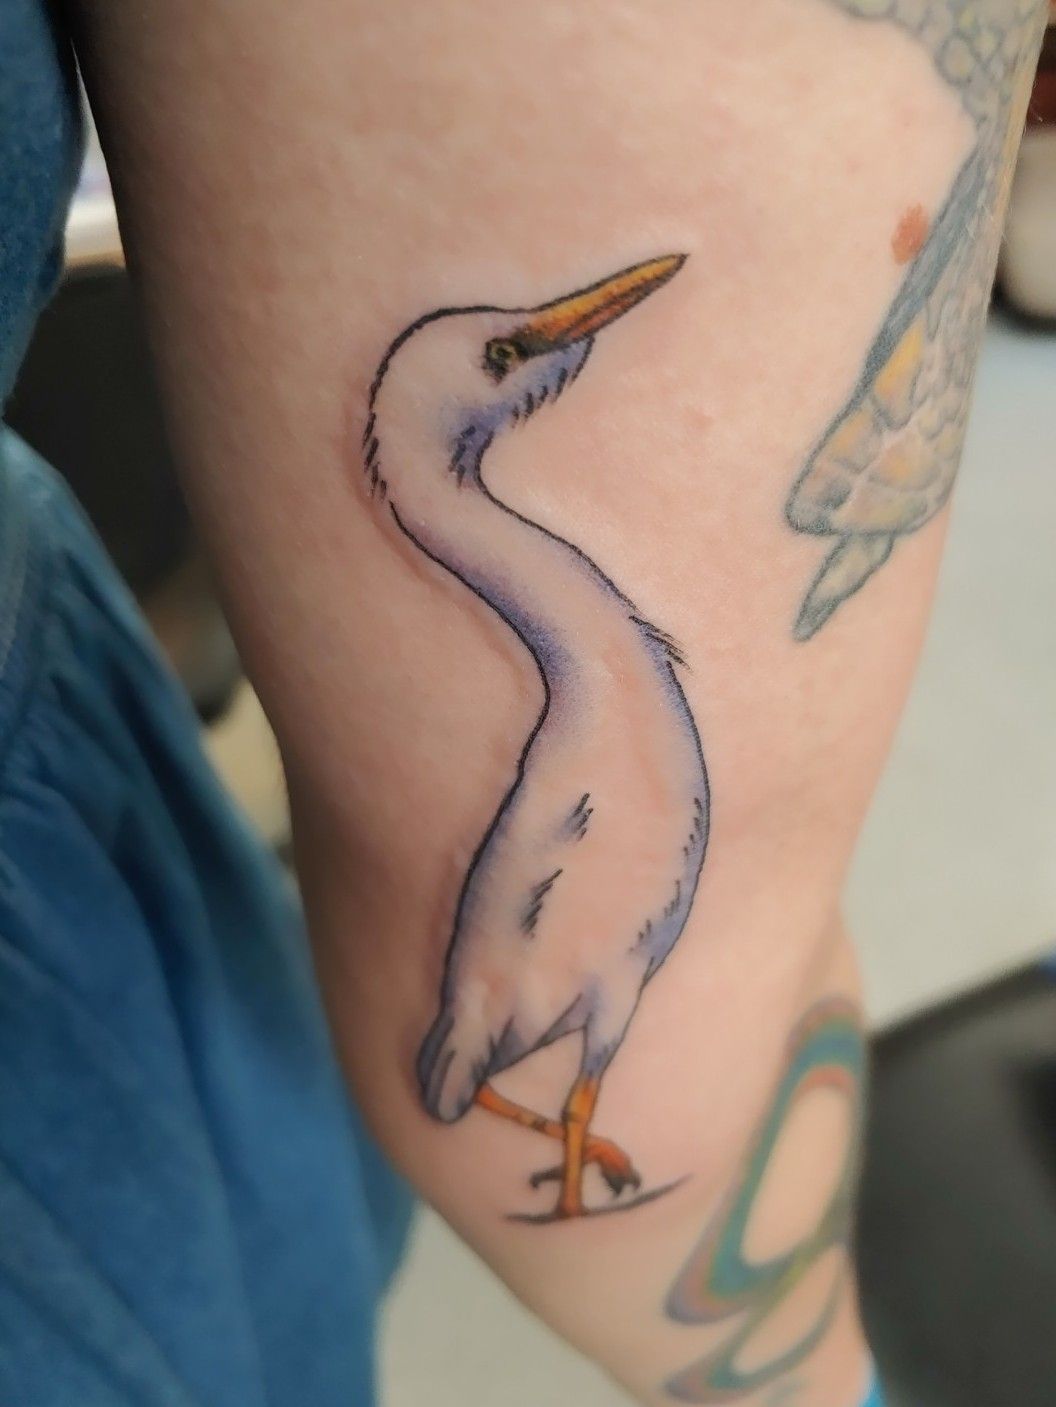 Browning and Ducks UnlimitedLOVE my new tattoo   Learn to tattoo  Tattoos Paw print tattoo